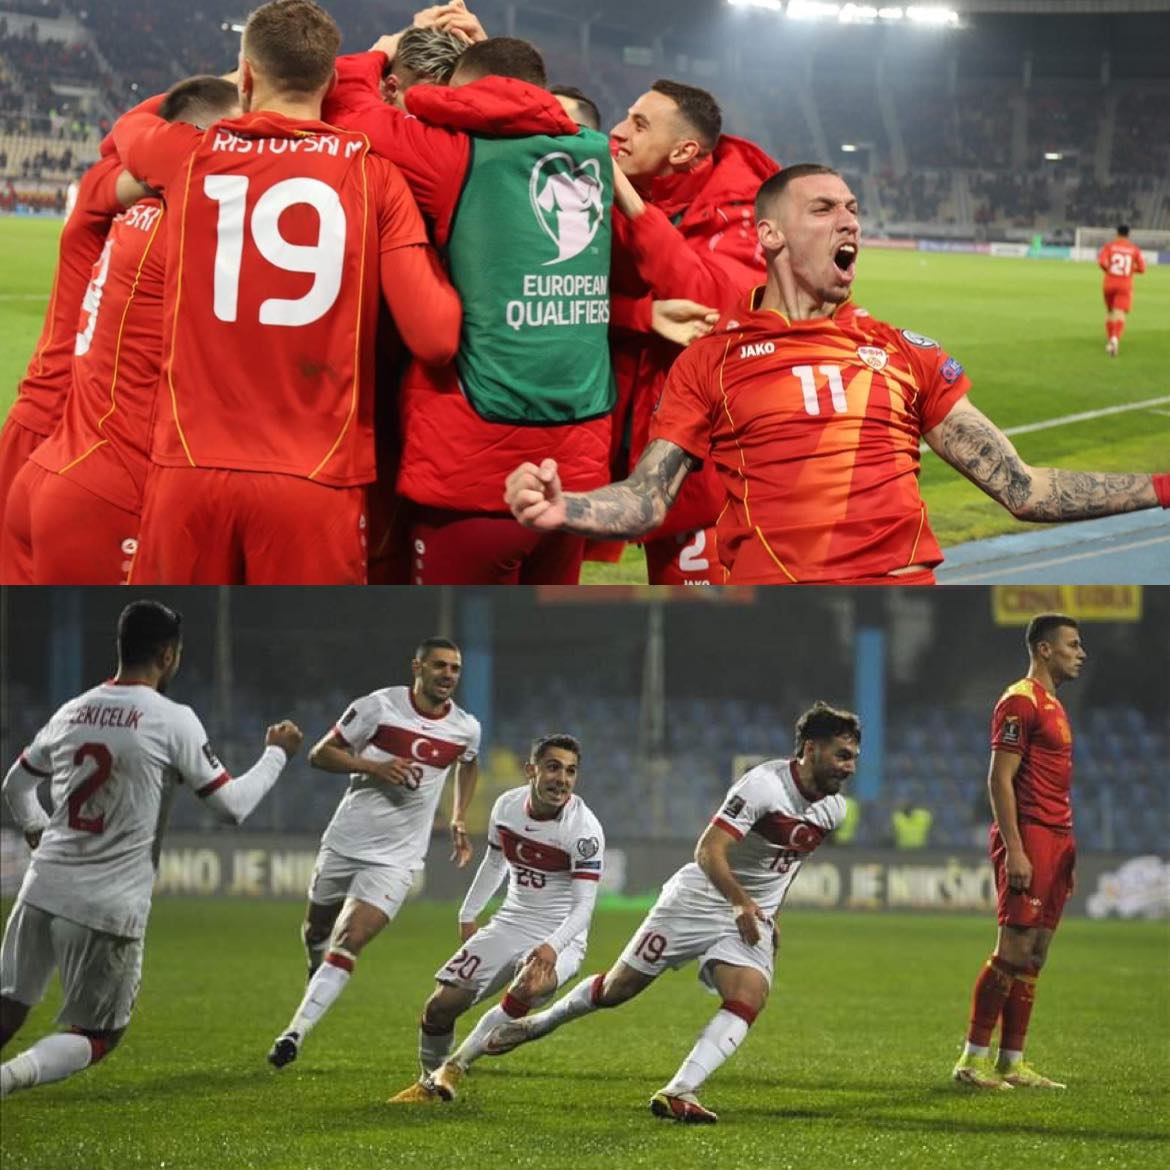 K.Makedonya ve Türkiye’nin FIFA Dünya Kupası play-off’taki rakibi yarın belli oluyor